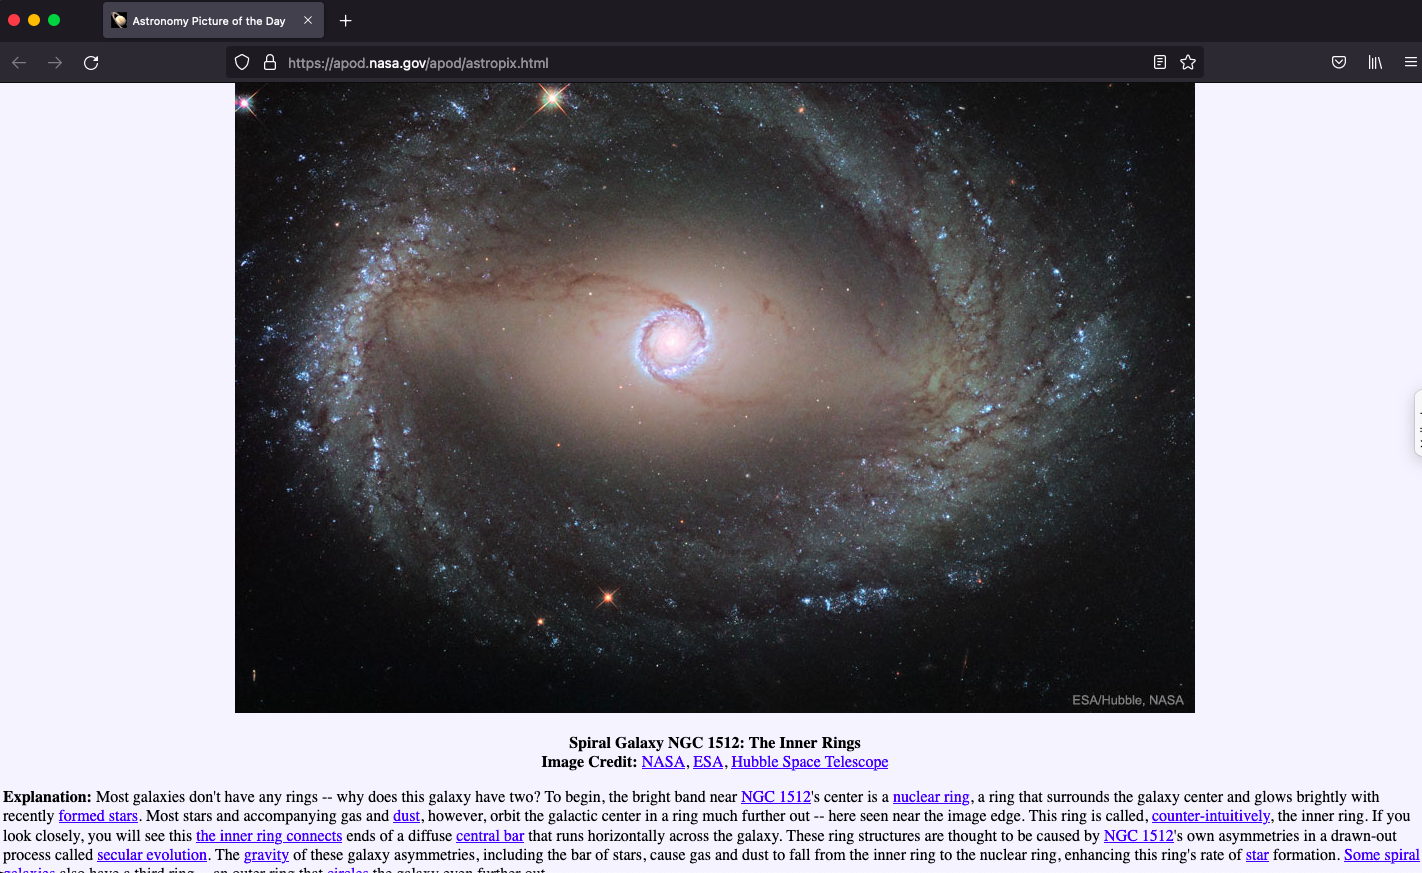 NASA spiral galaxy image